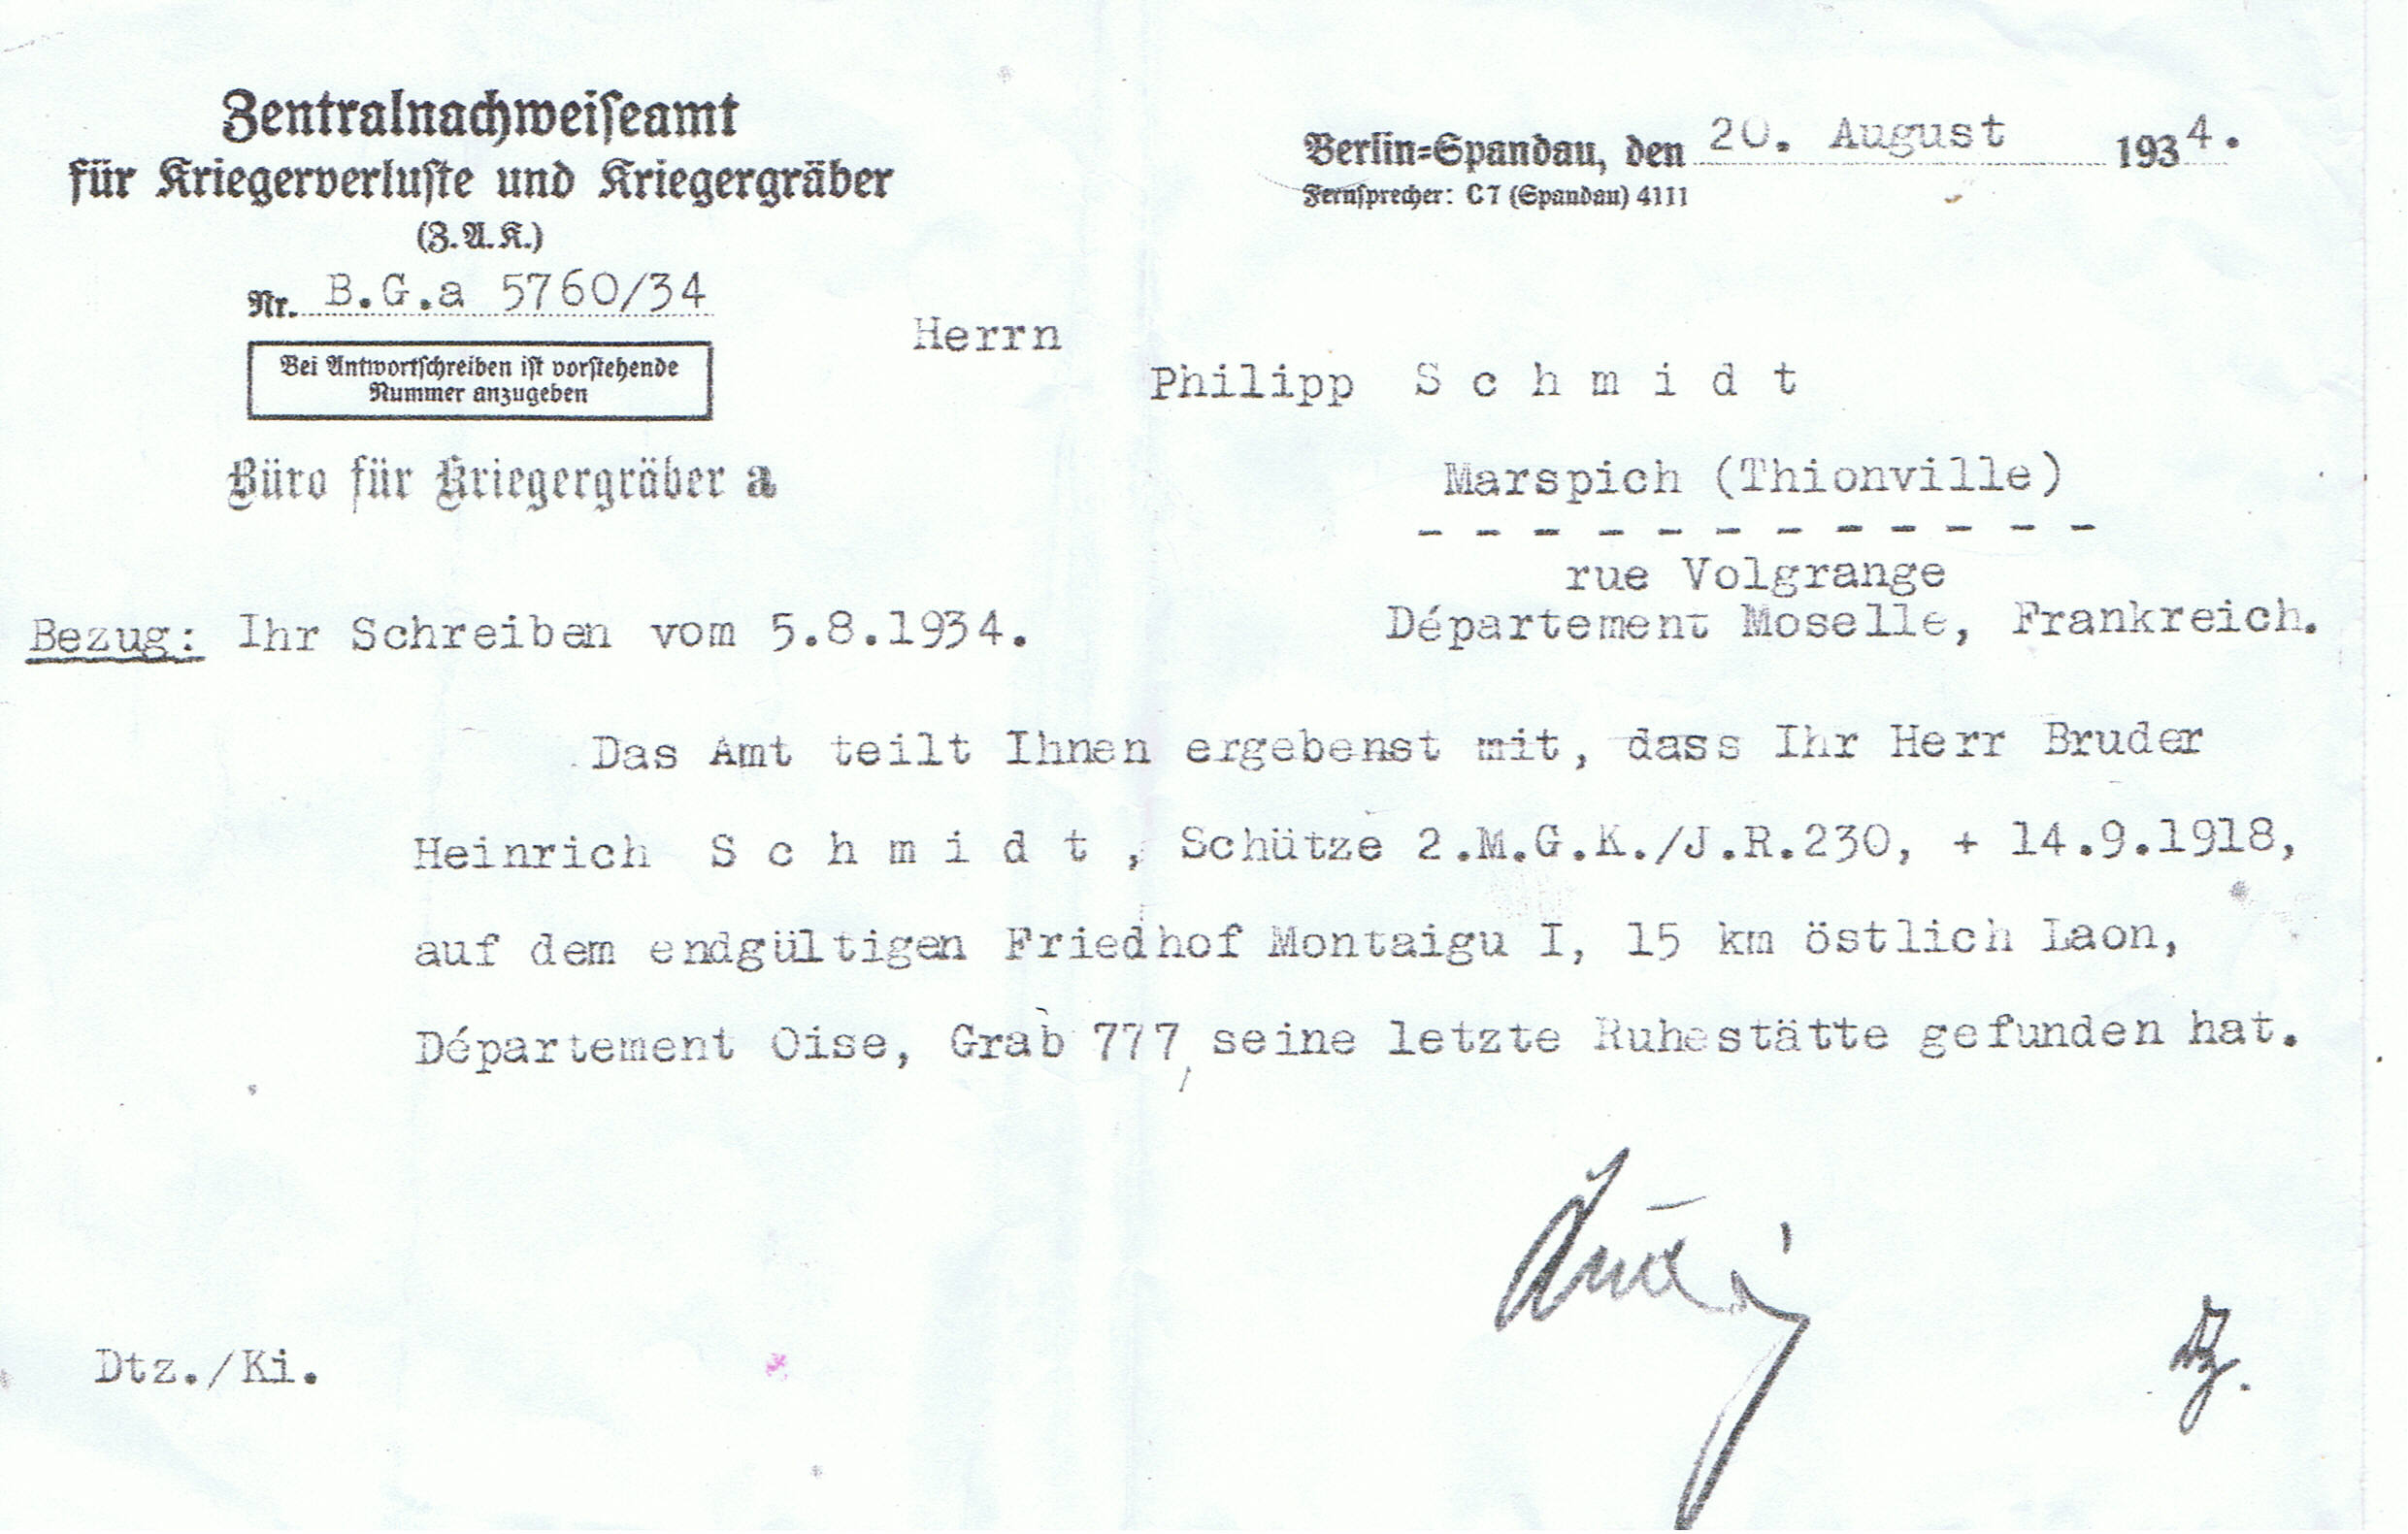 SCHMIDT Heinrich + 14/09/1918 Zentralnachweiseamt